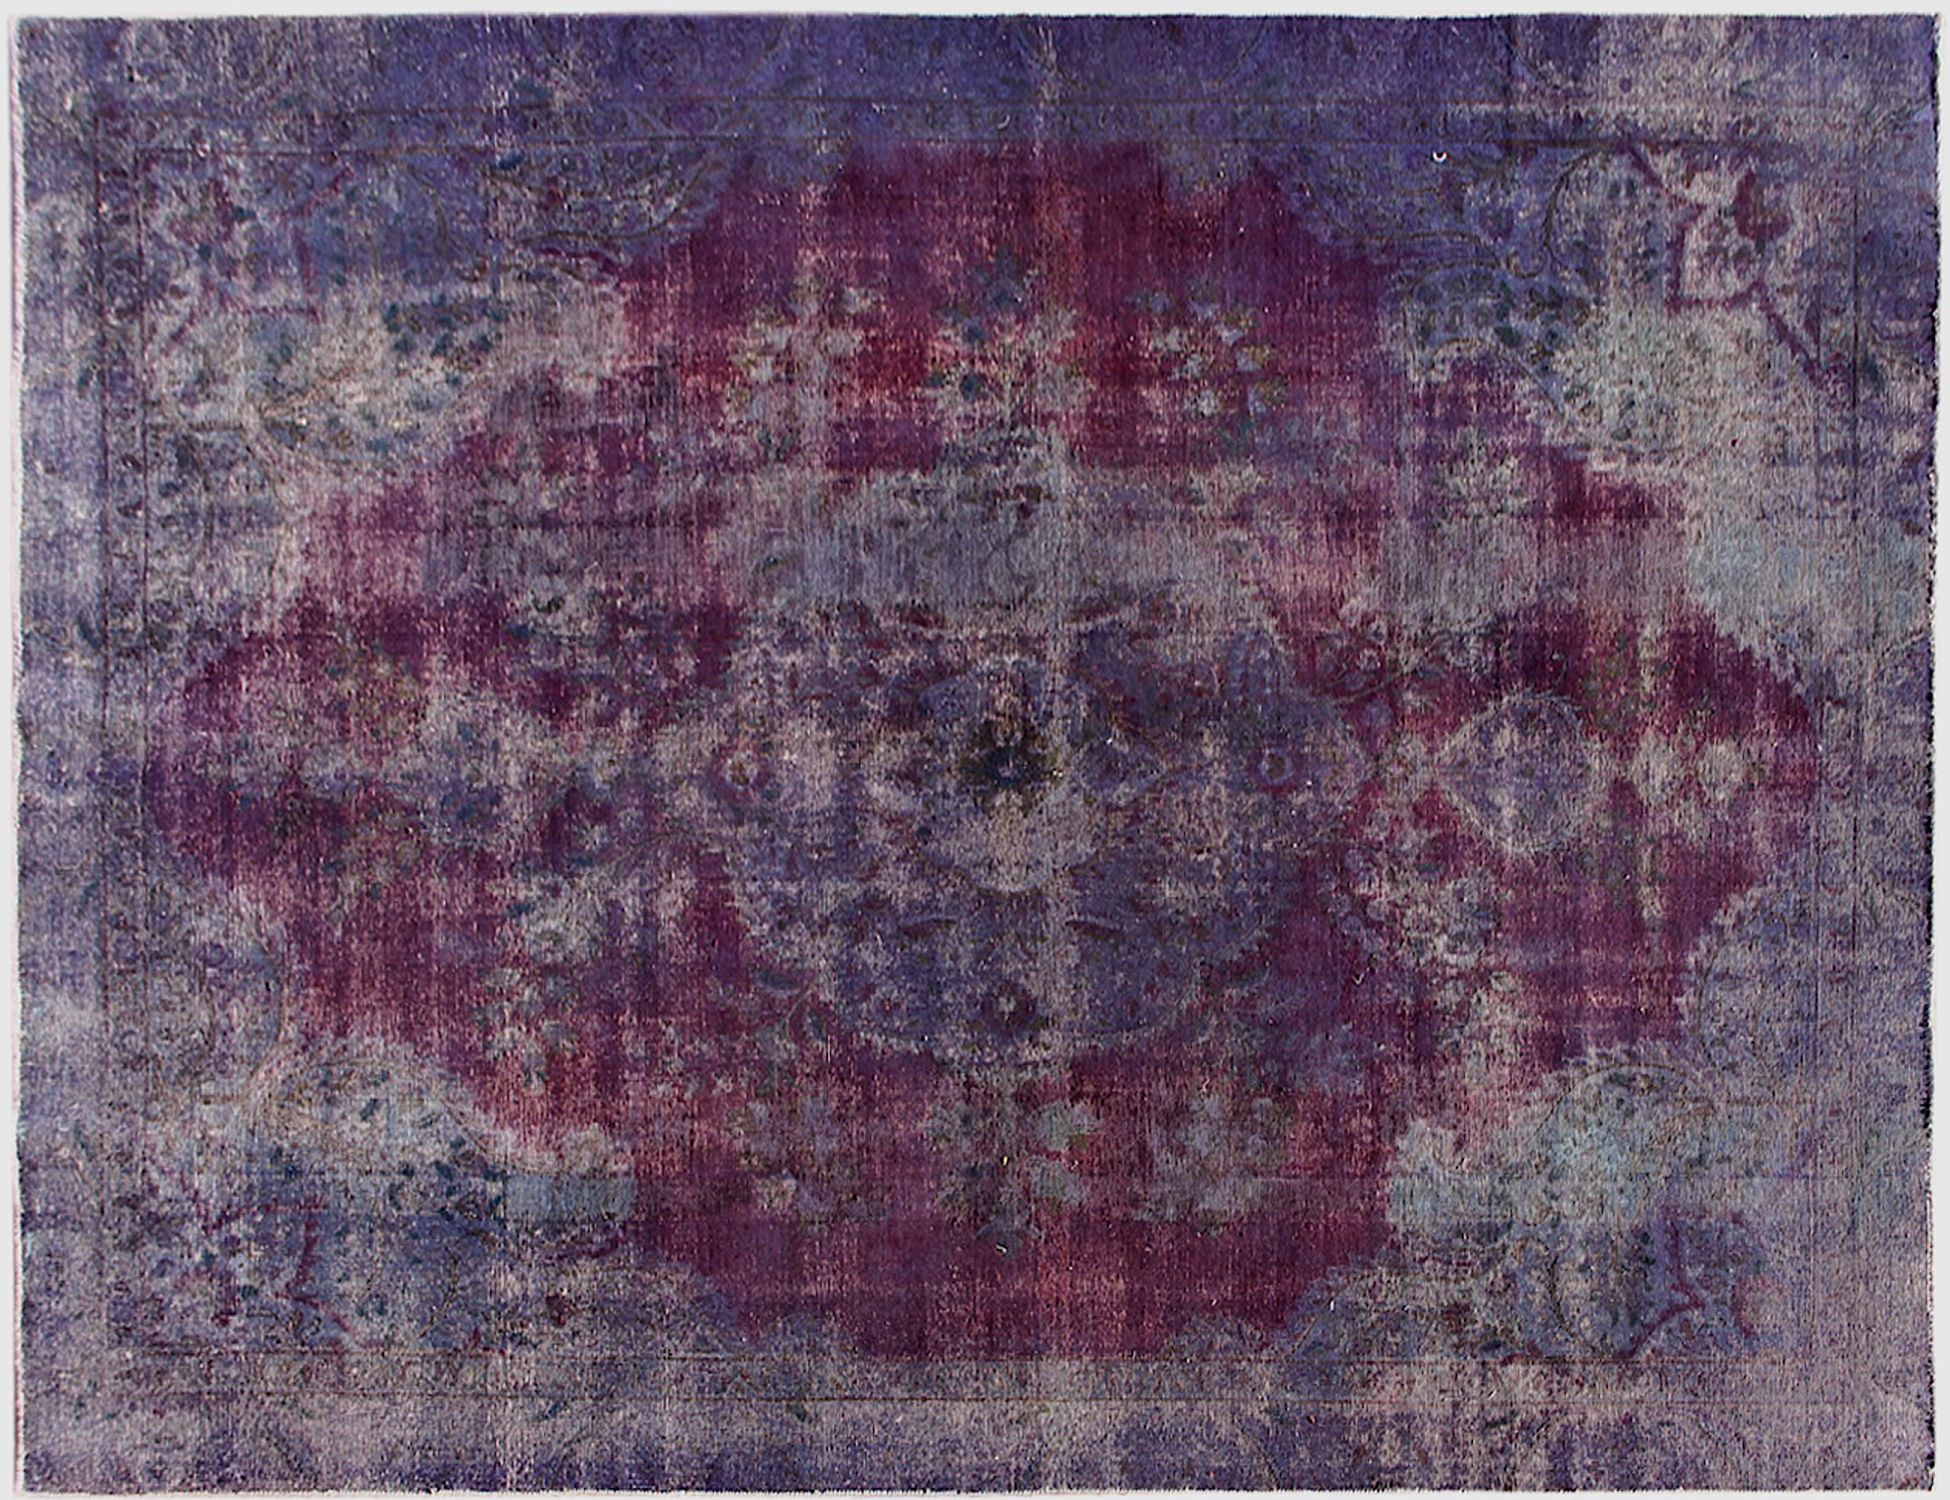 Persian Vintage Carpet  purple  <br/>365 x 257 cm